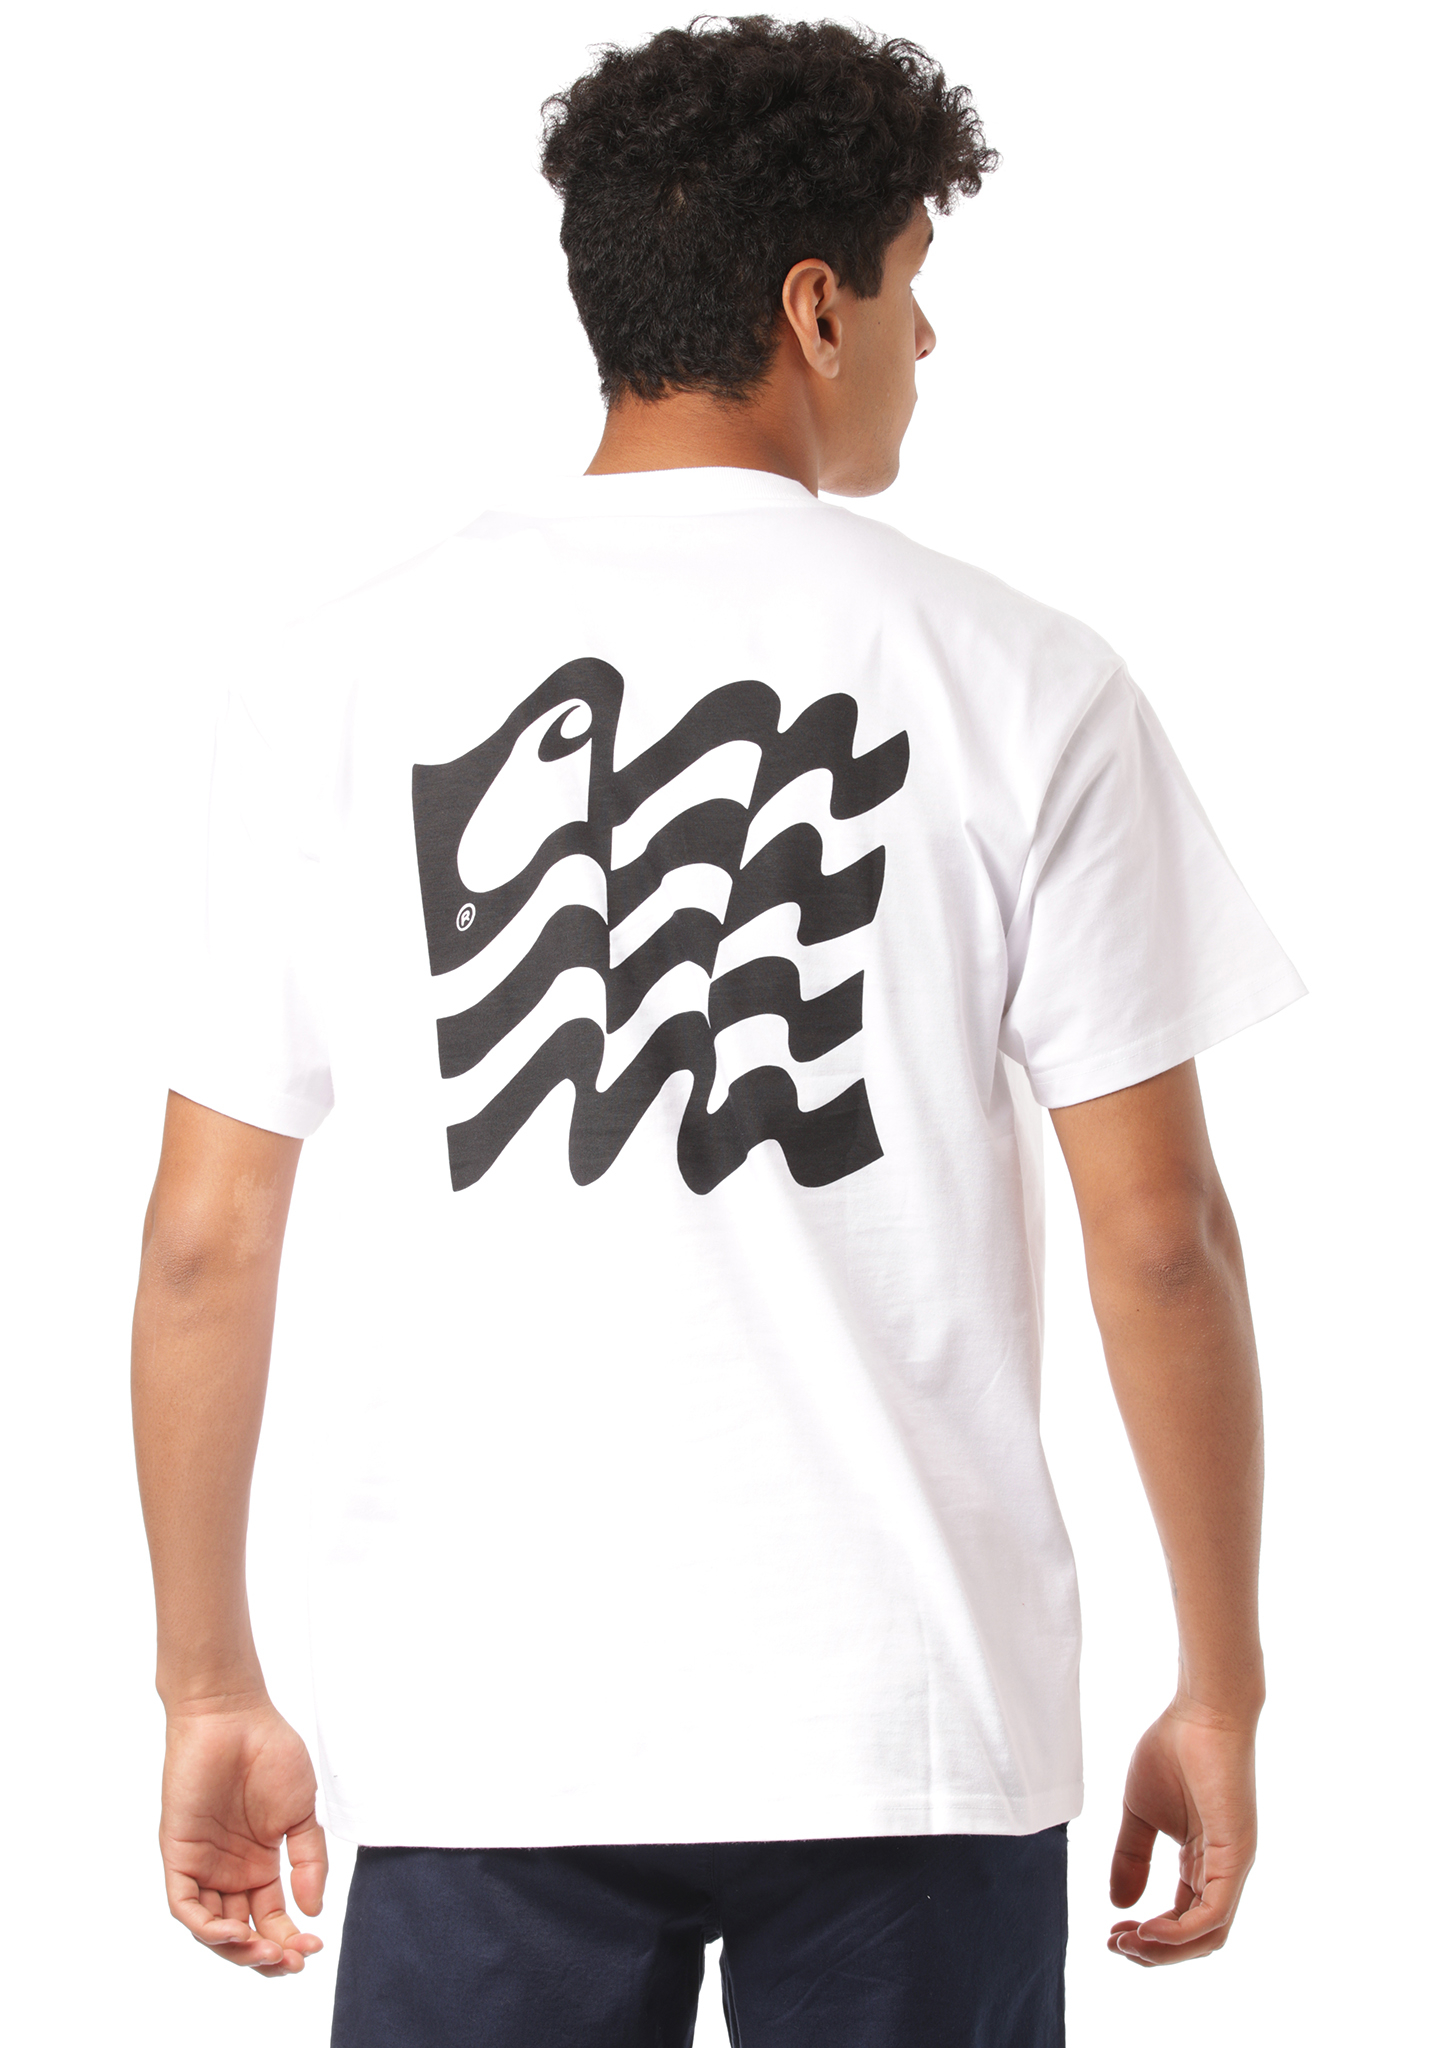 Carhartt WIP Wavy State T-Shirt weiß/schwarz S